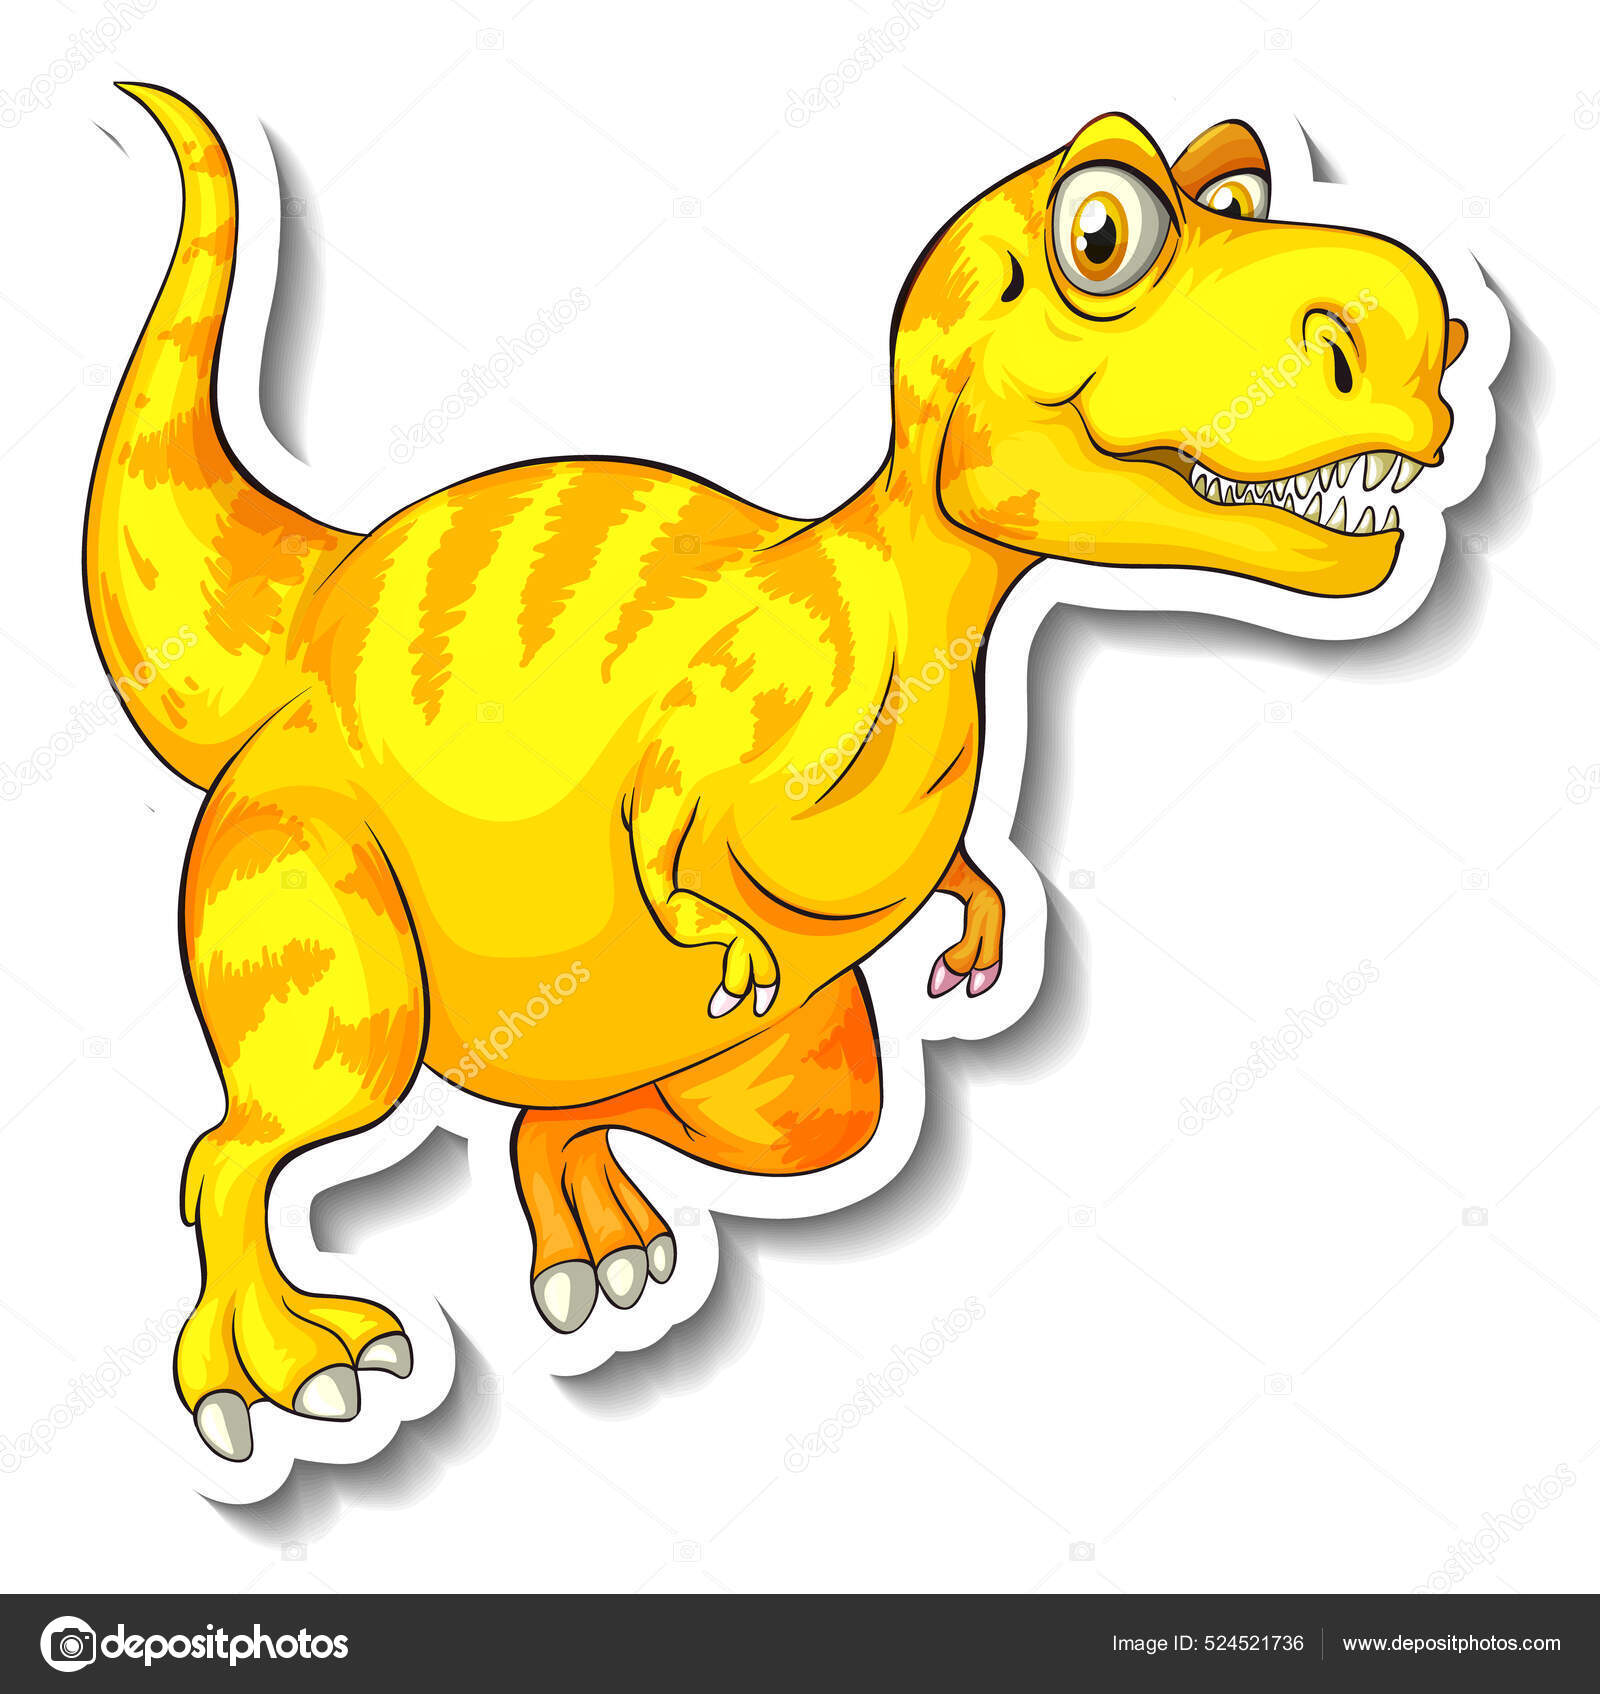 Tyrannosaurus Dinossauro Desenho Animado Personagem Etiqueta Ilustração  imagem vetorial de interactimages© 533688278